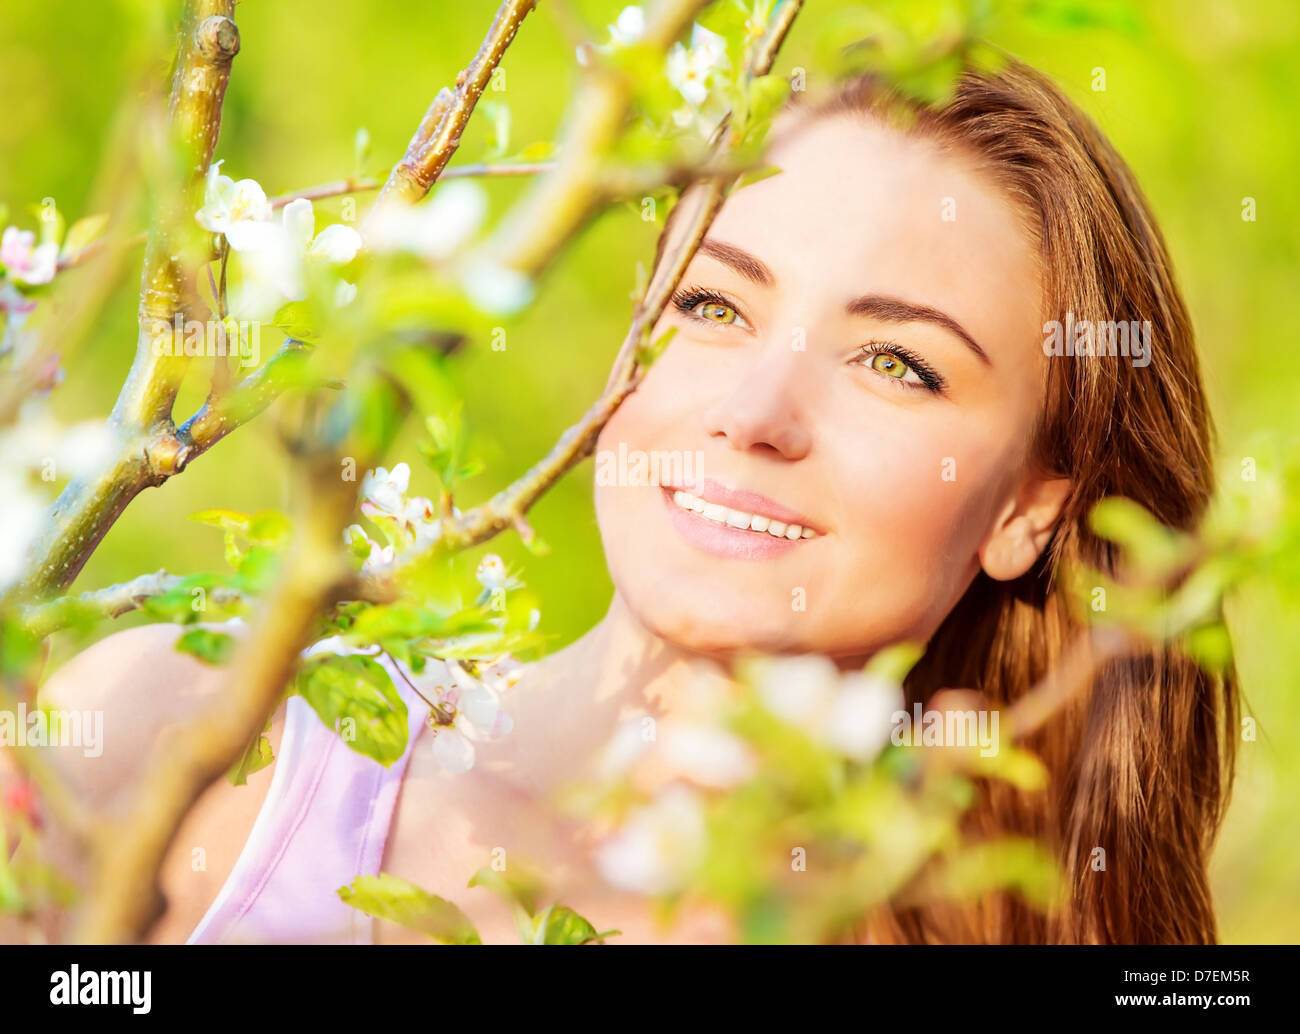 Closeup Ritratto di giovane attraente signora avendo divertimento all'aperto, la molla natura, albero apple blossom, giornata soleggiata, concetto di felicità Foto Stock